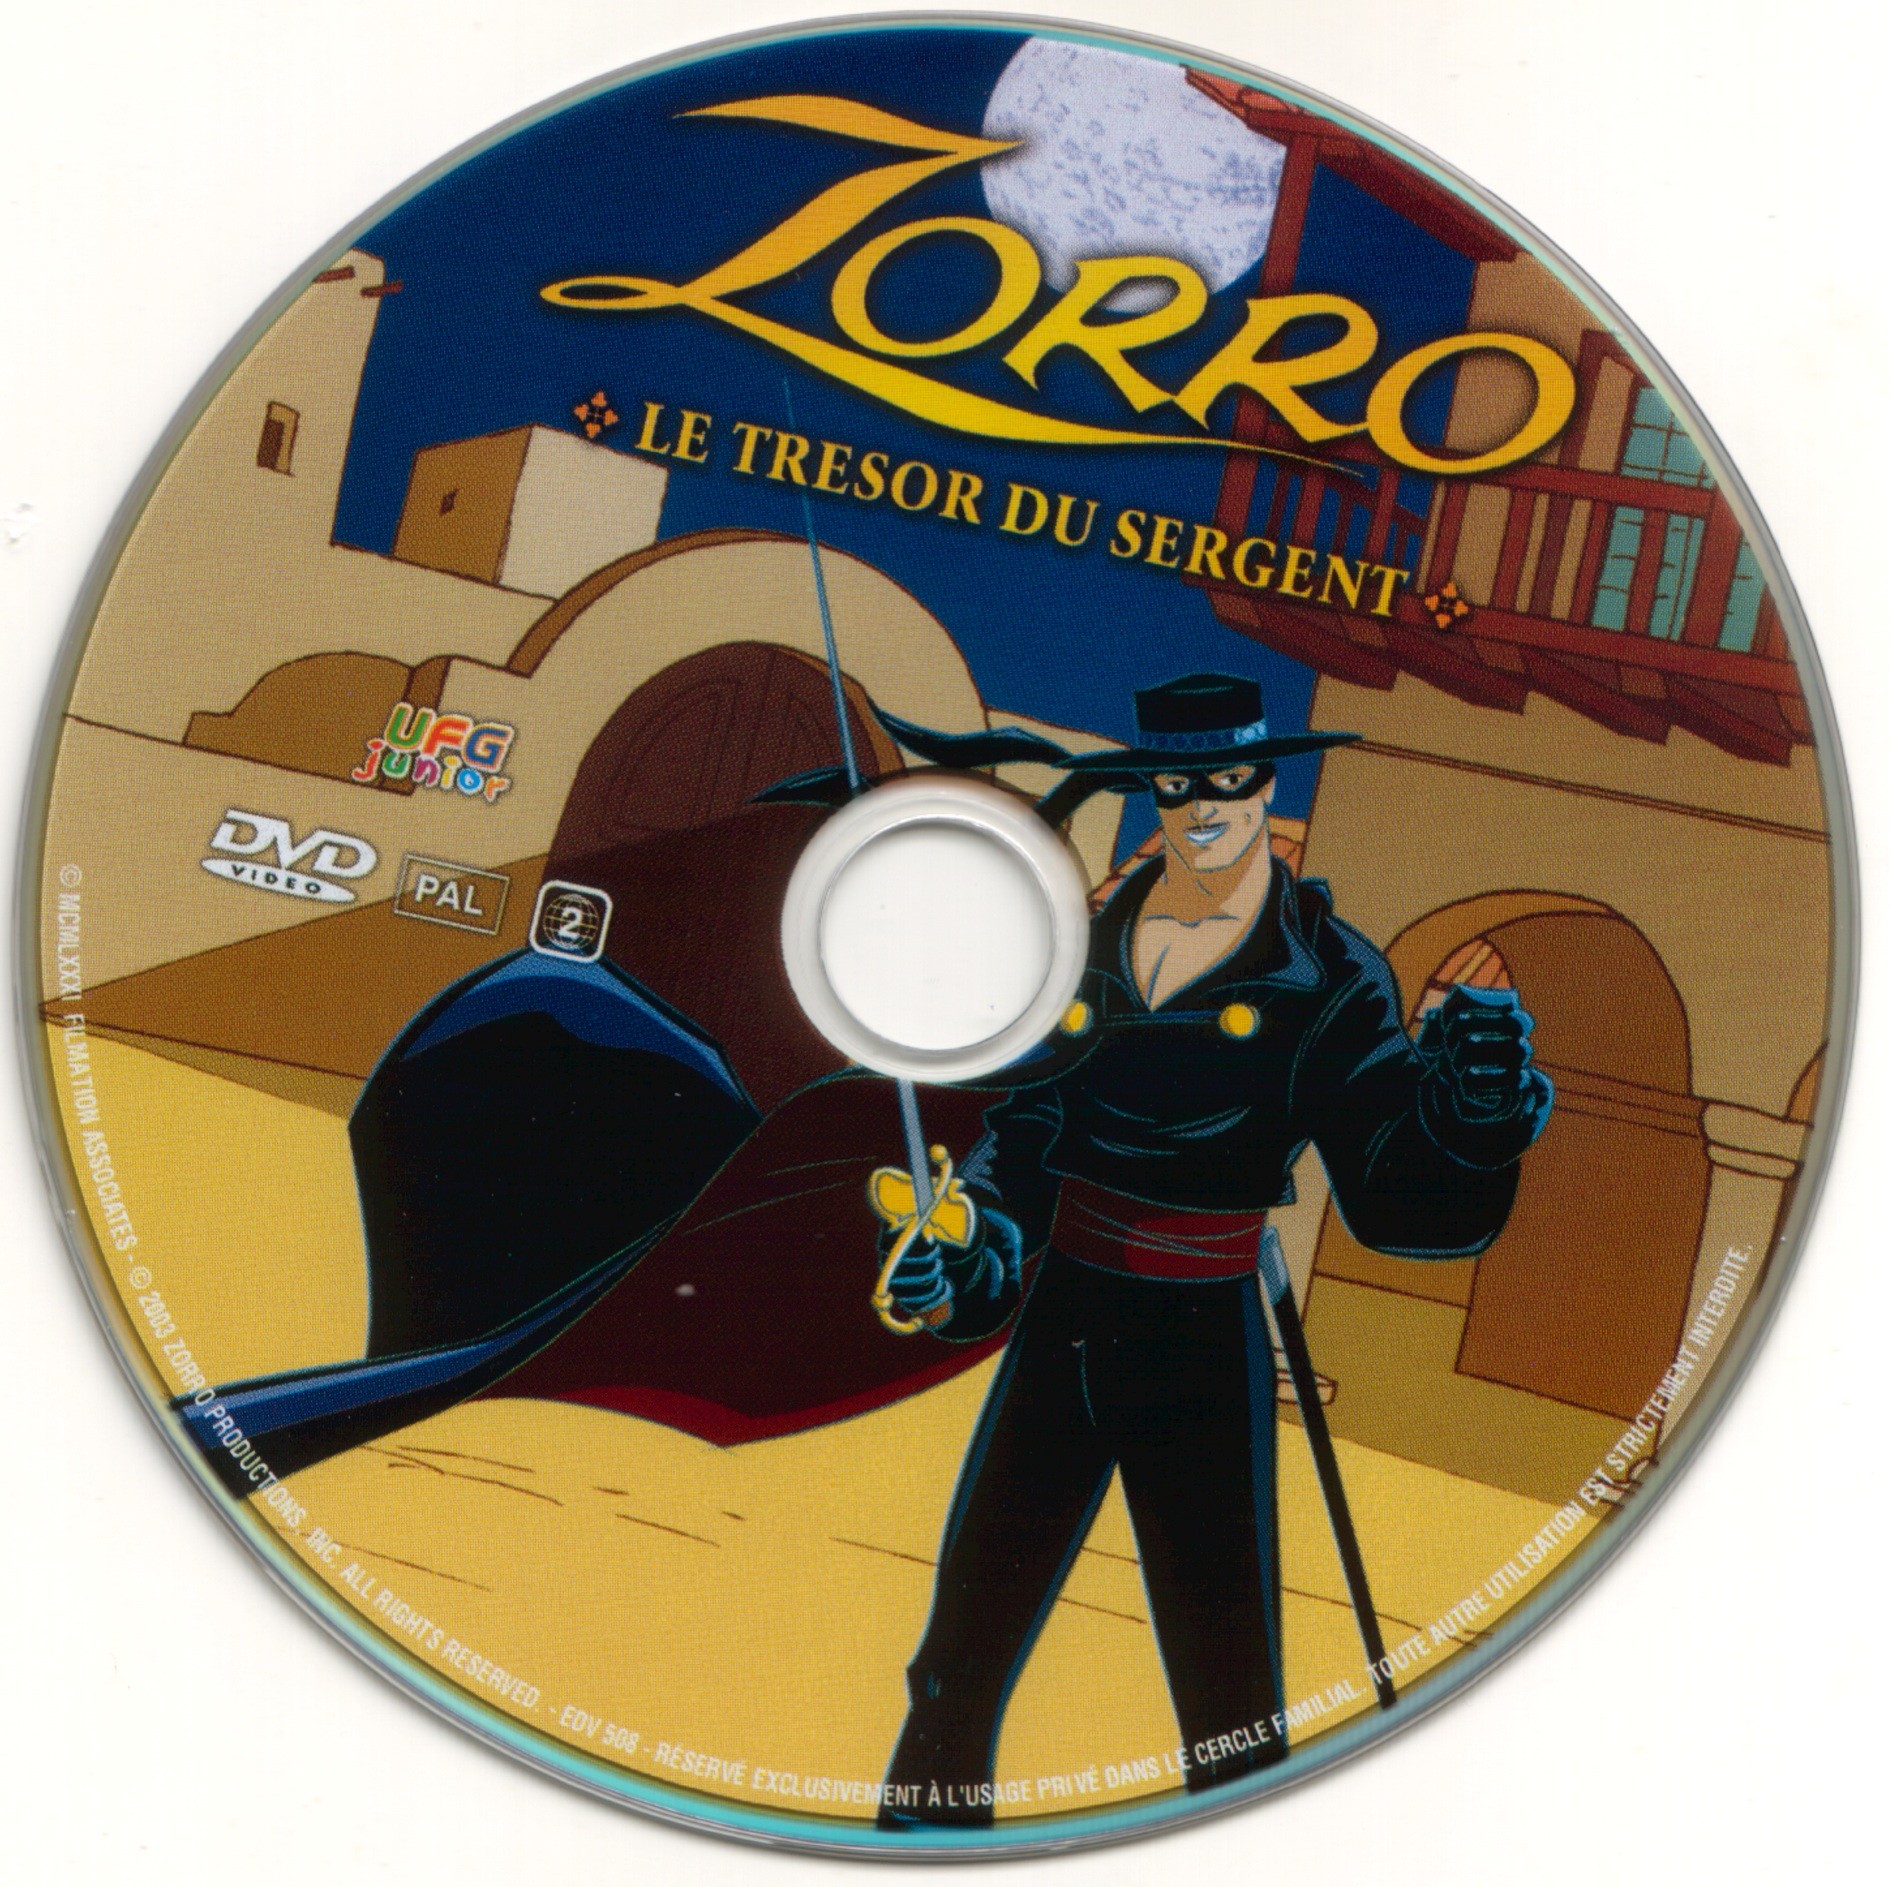 Zorro le tresor du sergent